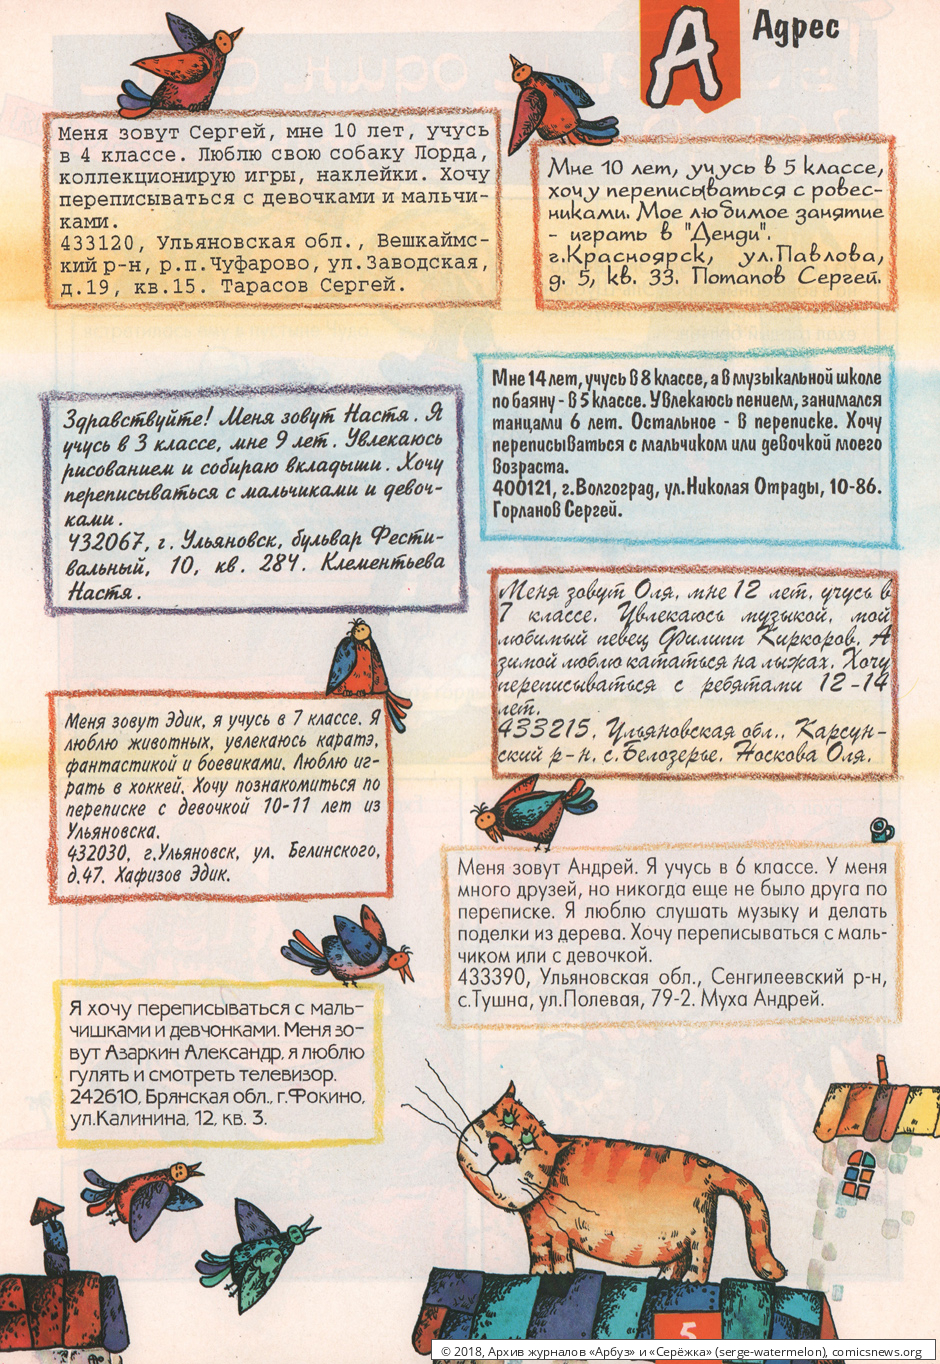 № 32 ( "Арбуз" № 6 / 1997 ) - Архив журналов «Арбуз» и «Серёжка»